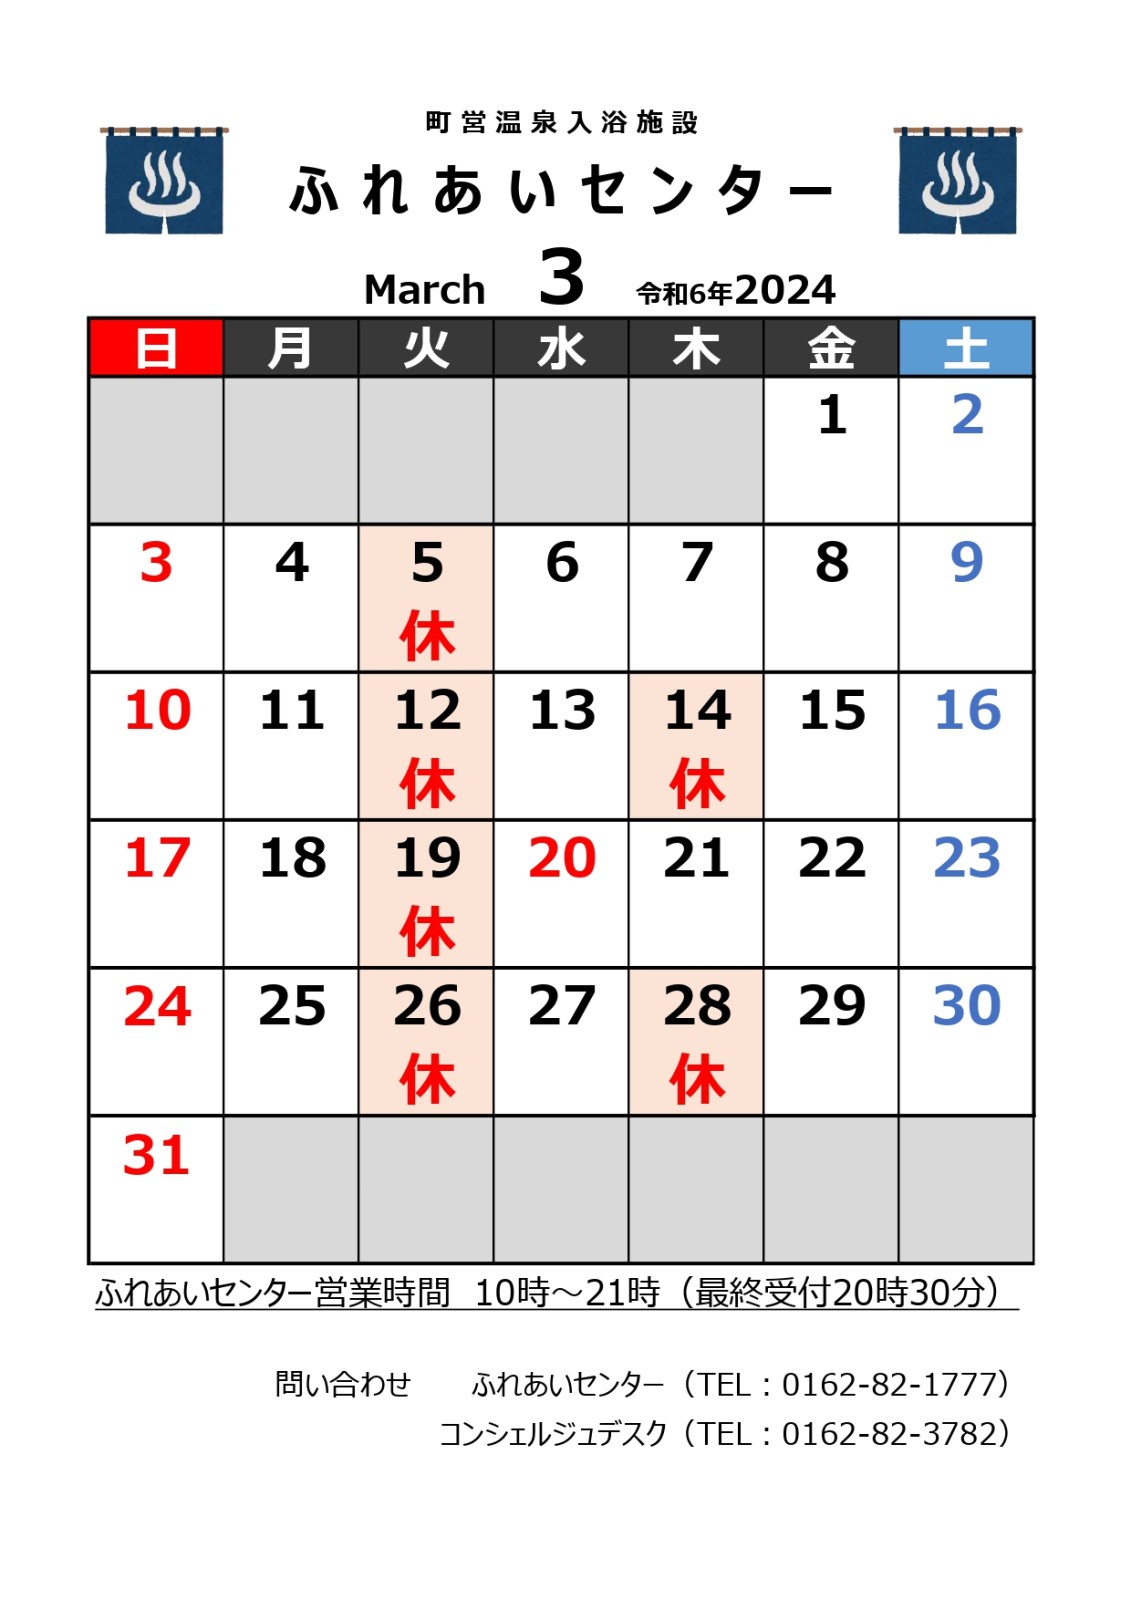 【ふれあいセンター】3月の営業について